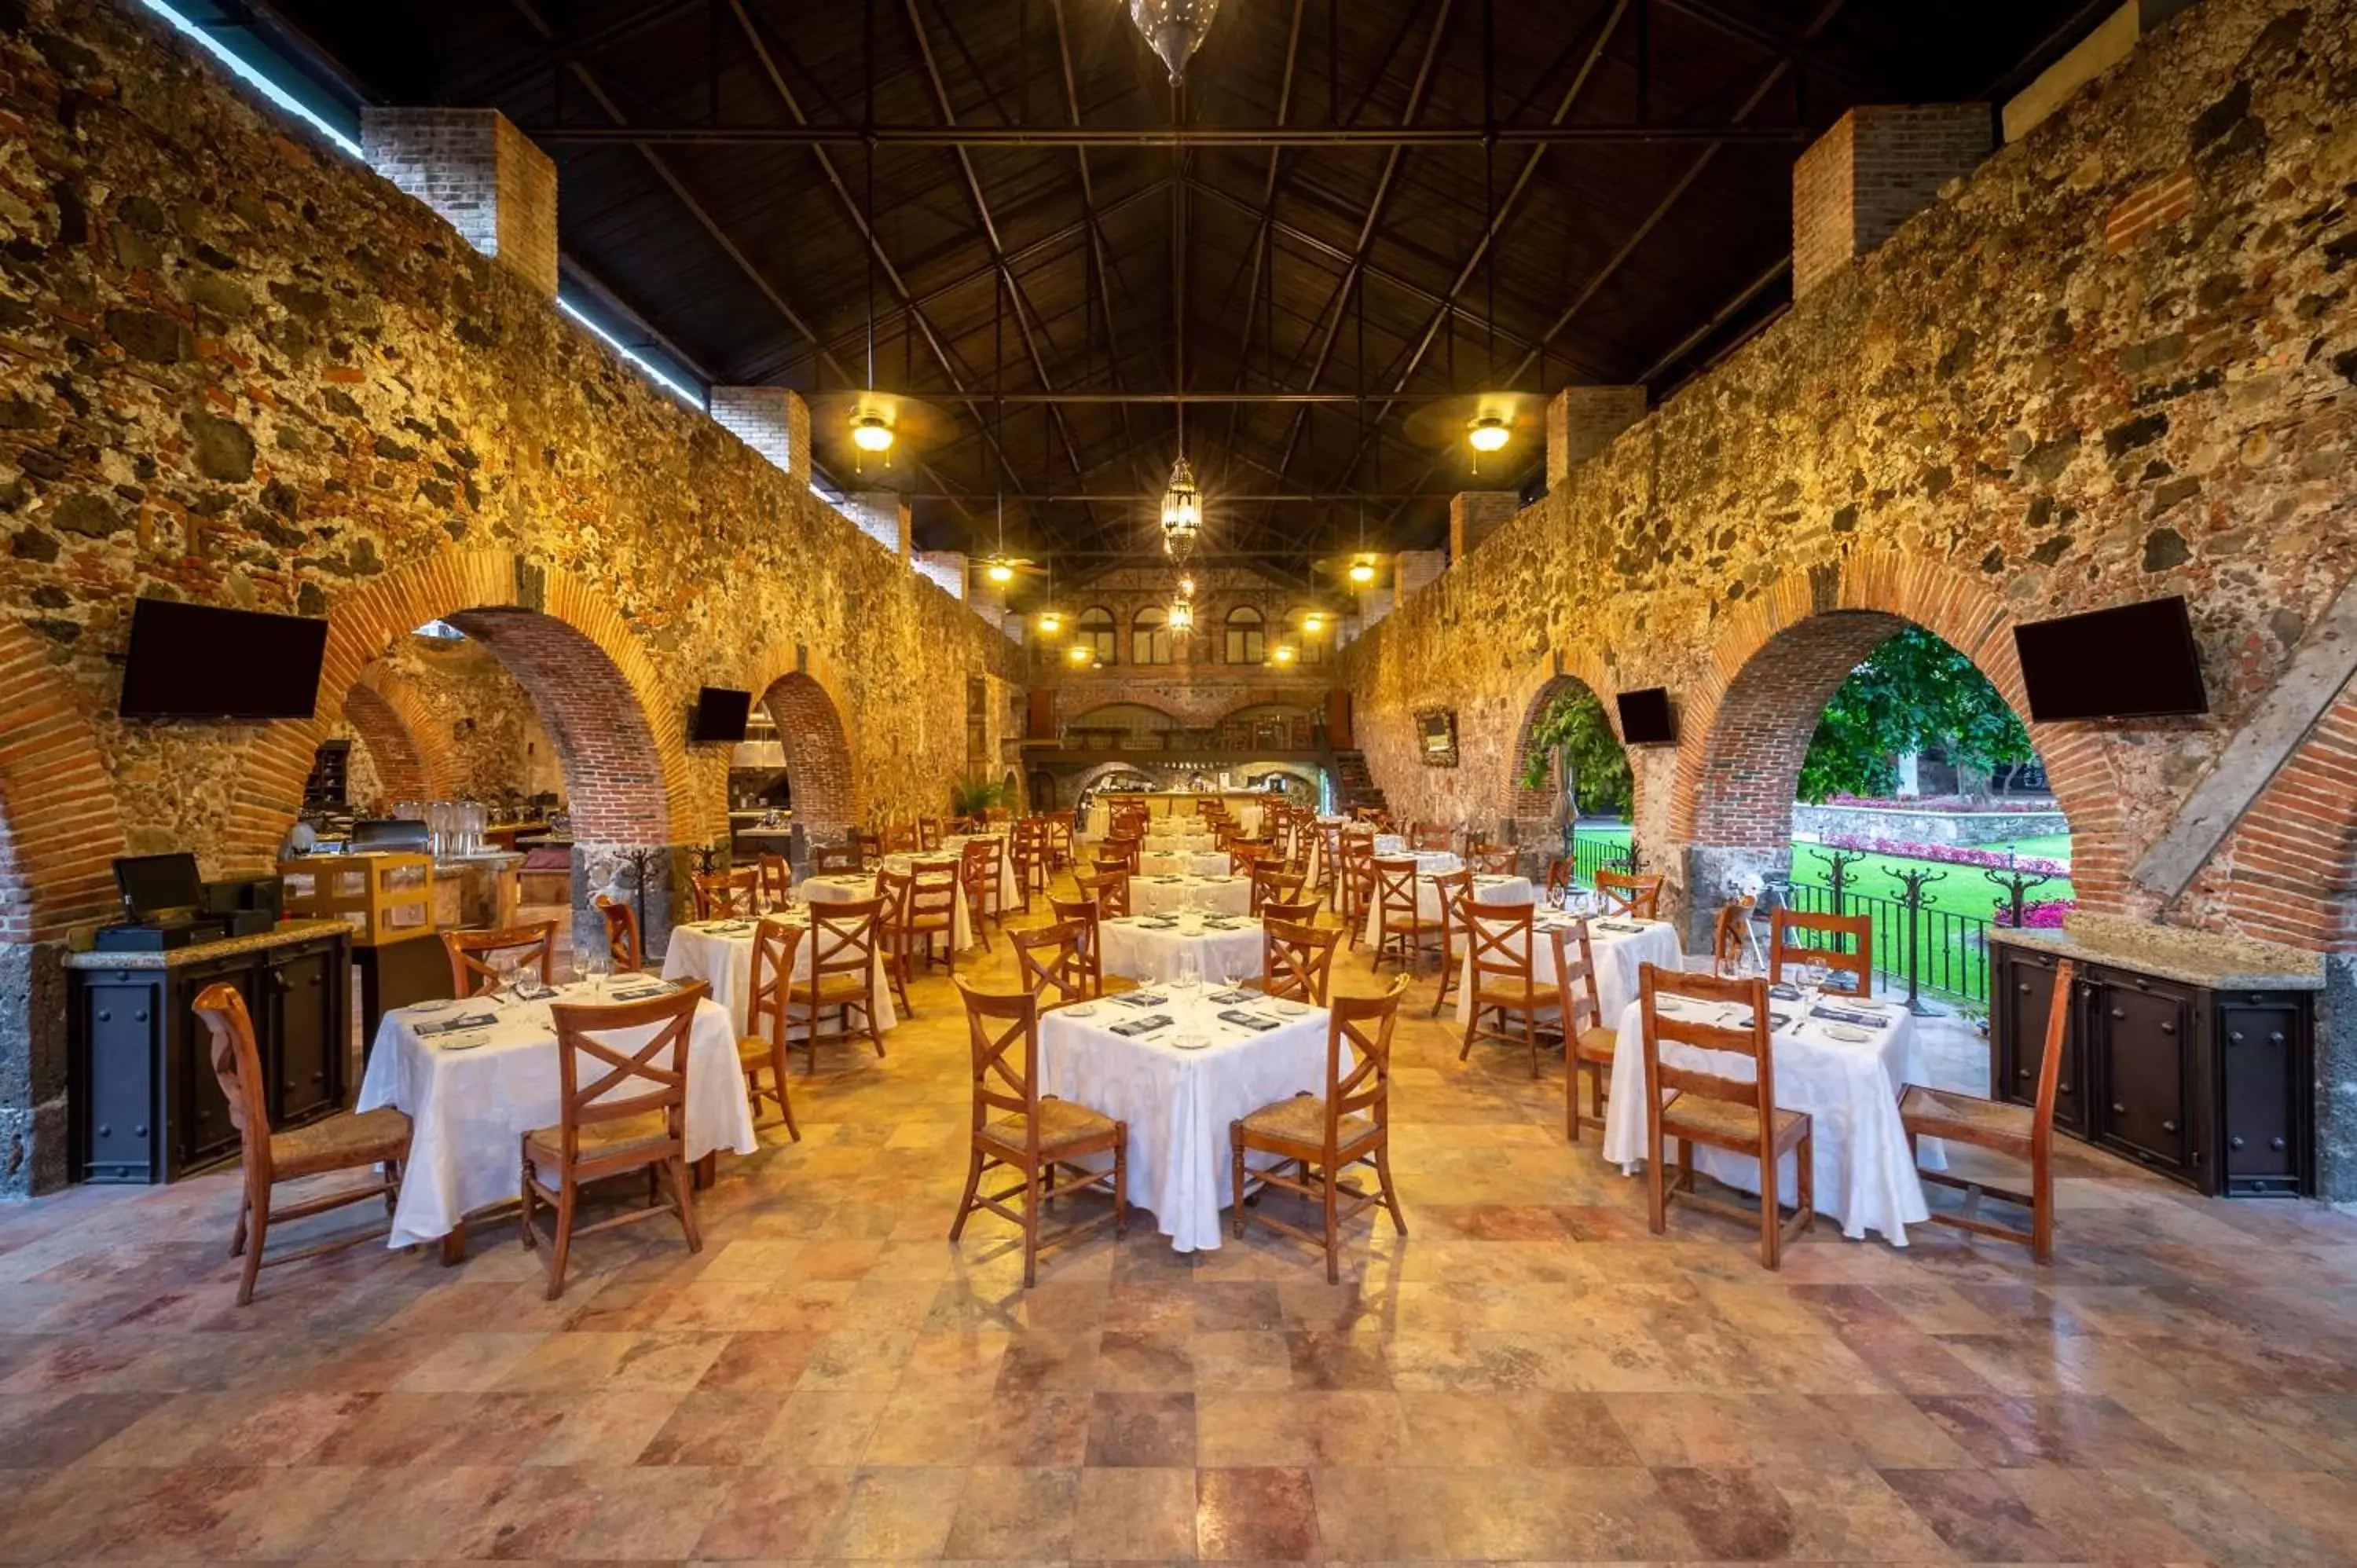 Restaurant/Places to Eat in Fiesta Americana Hacienda San Antonio El Puente Cuernavaca